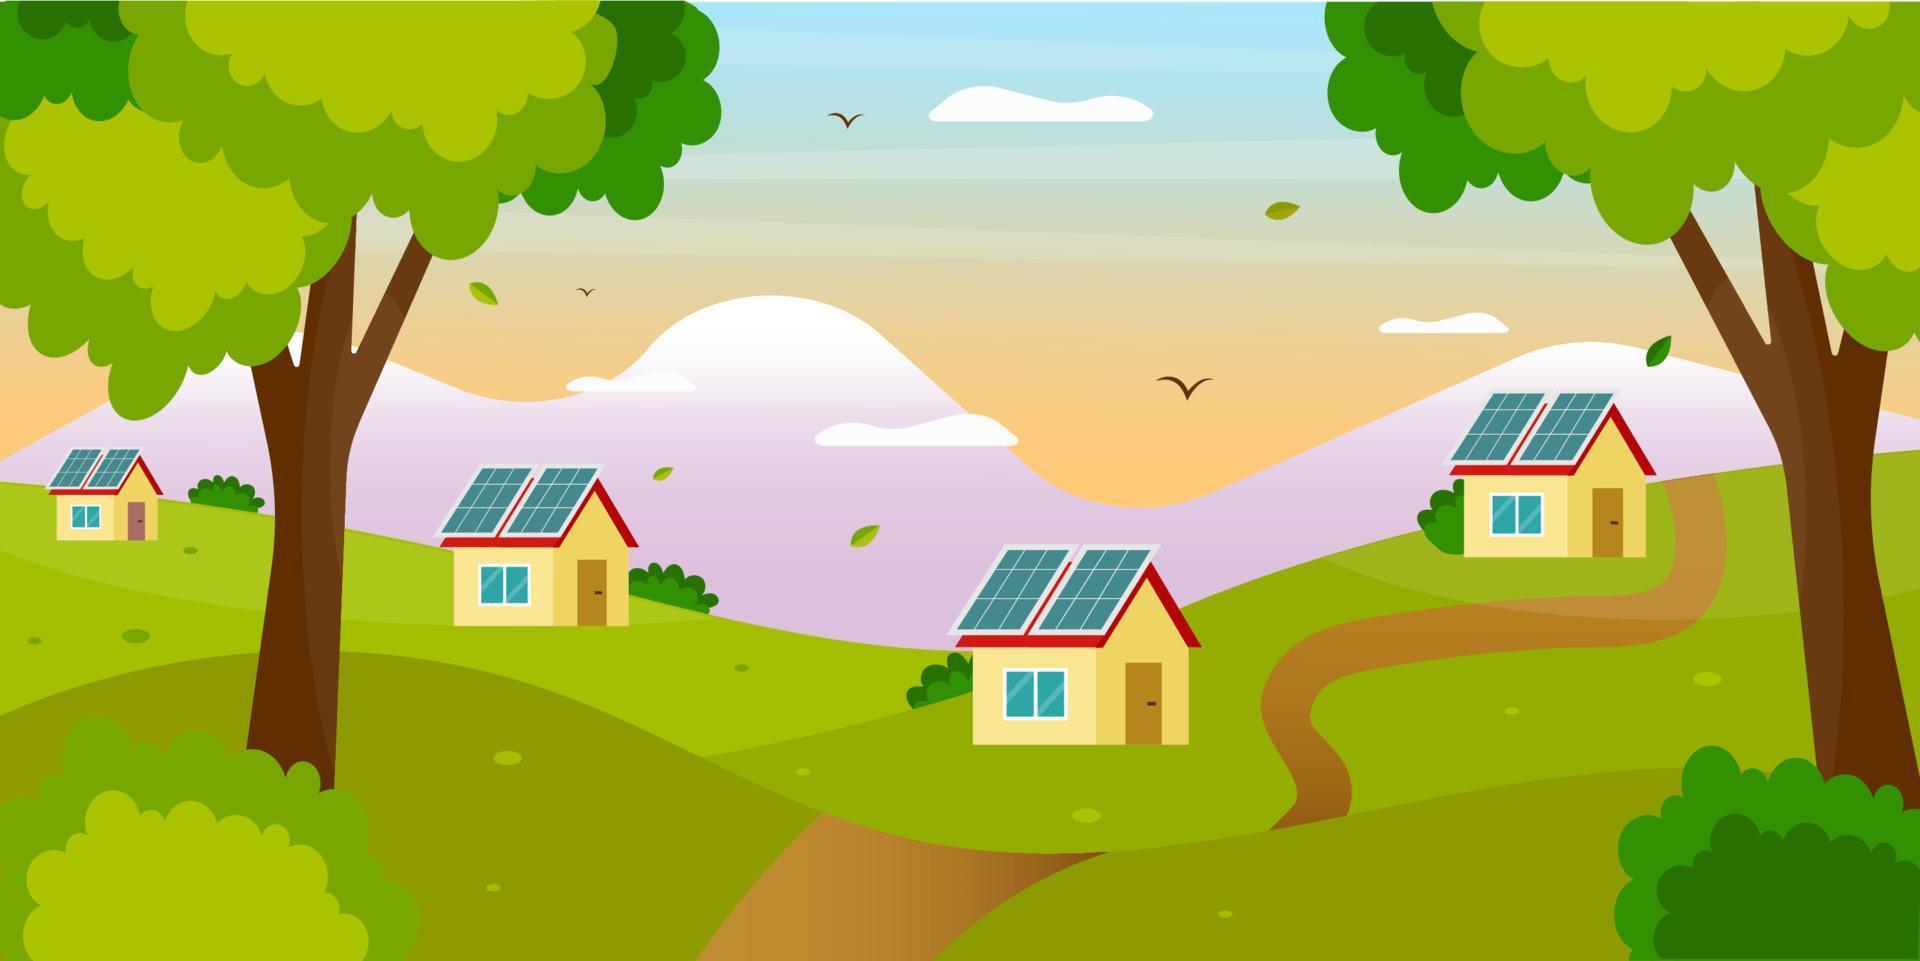 hermoso paisaje con casas y paneles solares. ilustración del concepto de vector de producción de energía solar. estilo de dibujos animados plana.